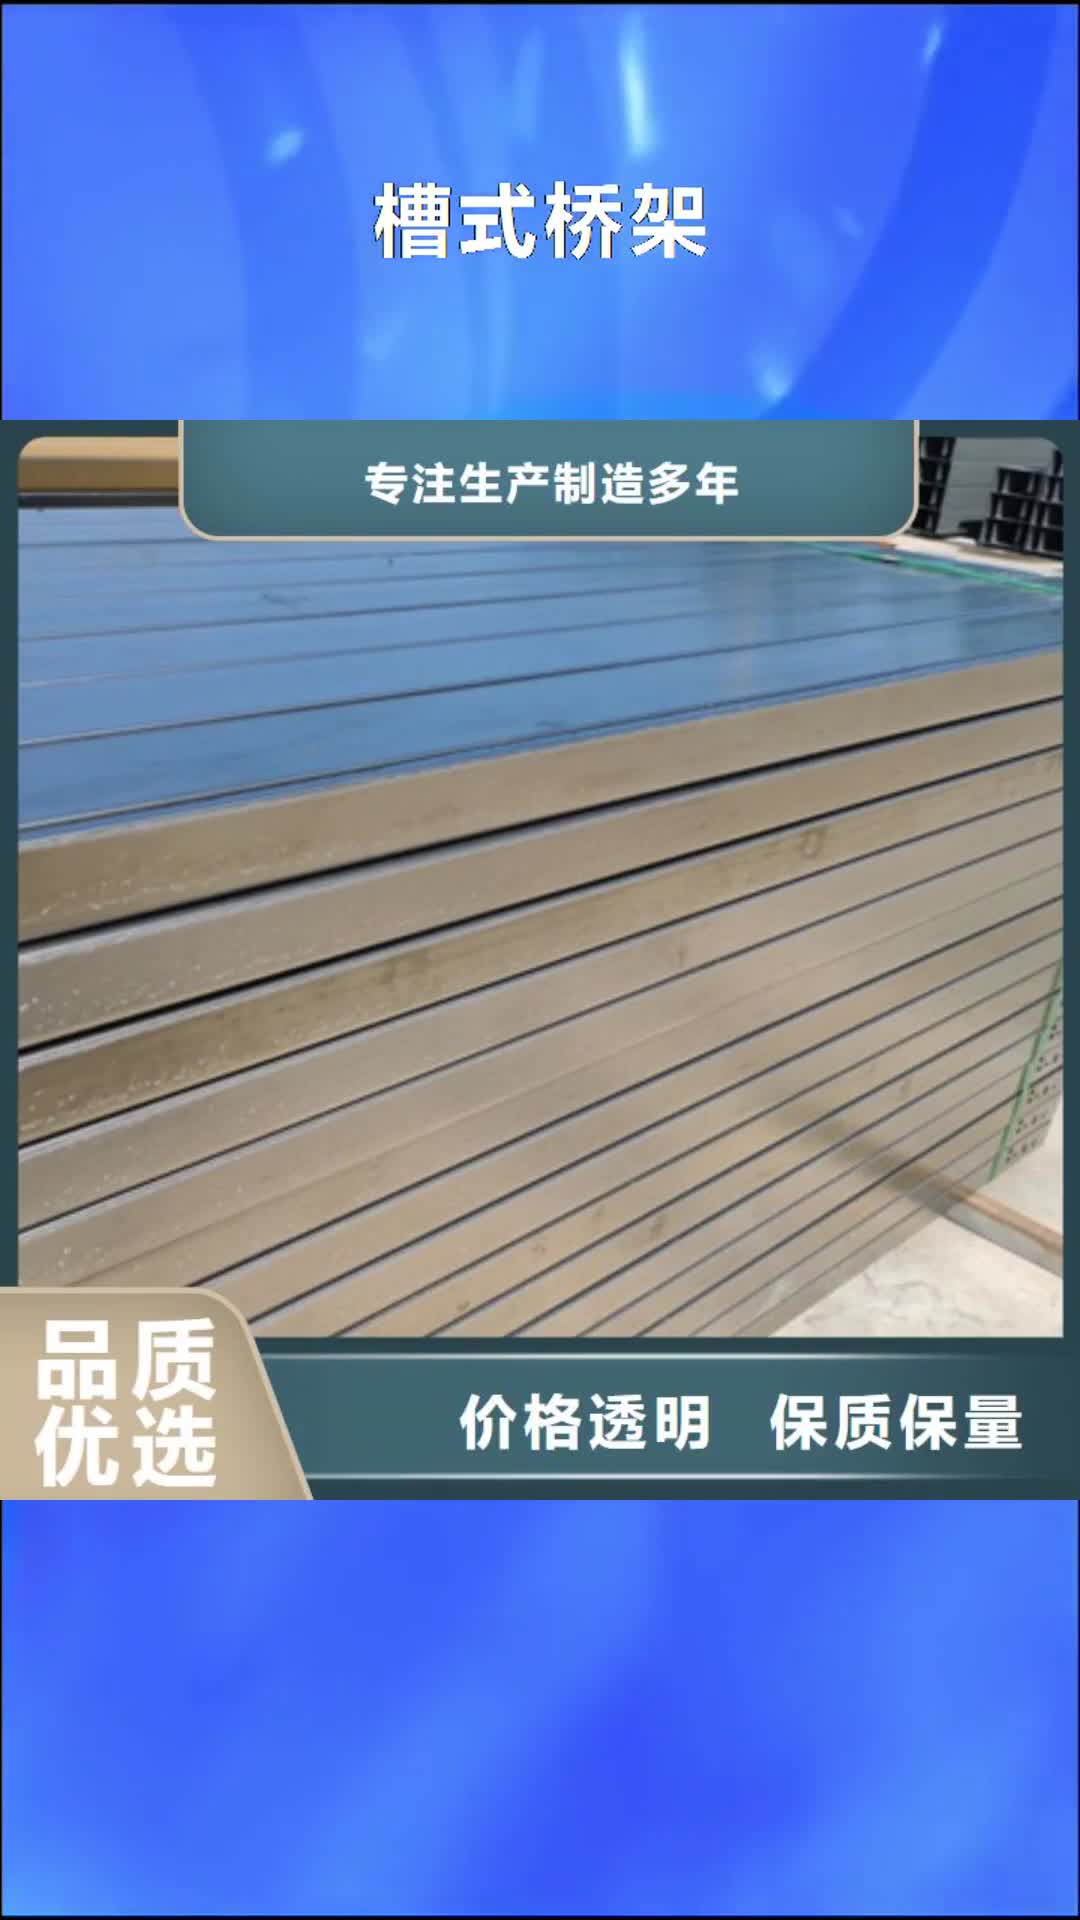 甘肃【槽式桥架】-锌铝镁桥架厂家品质优选